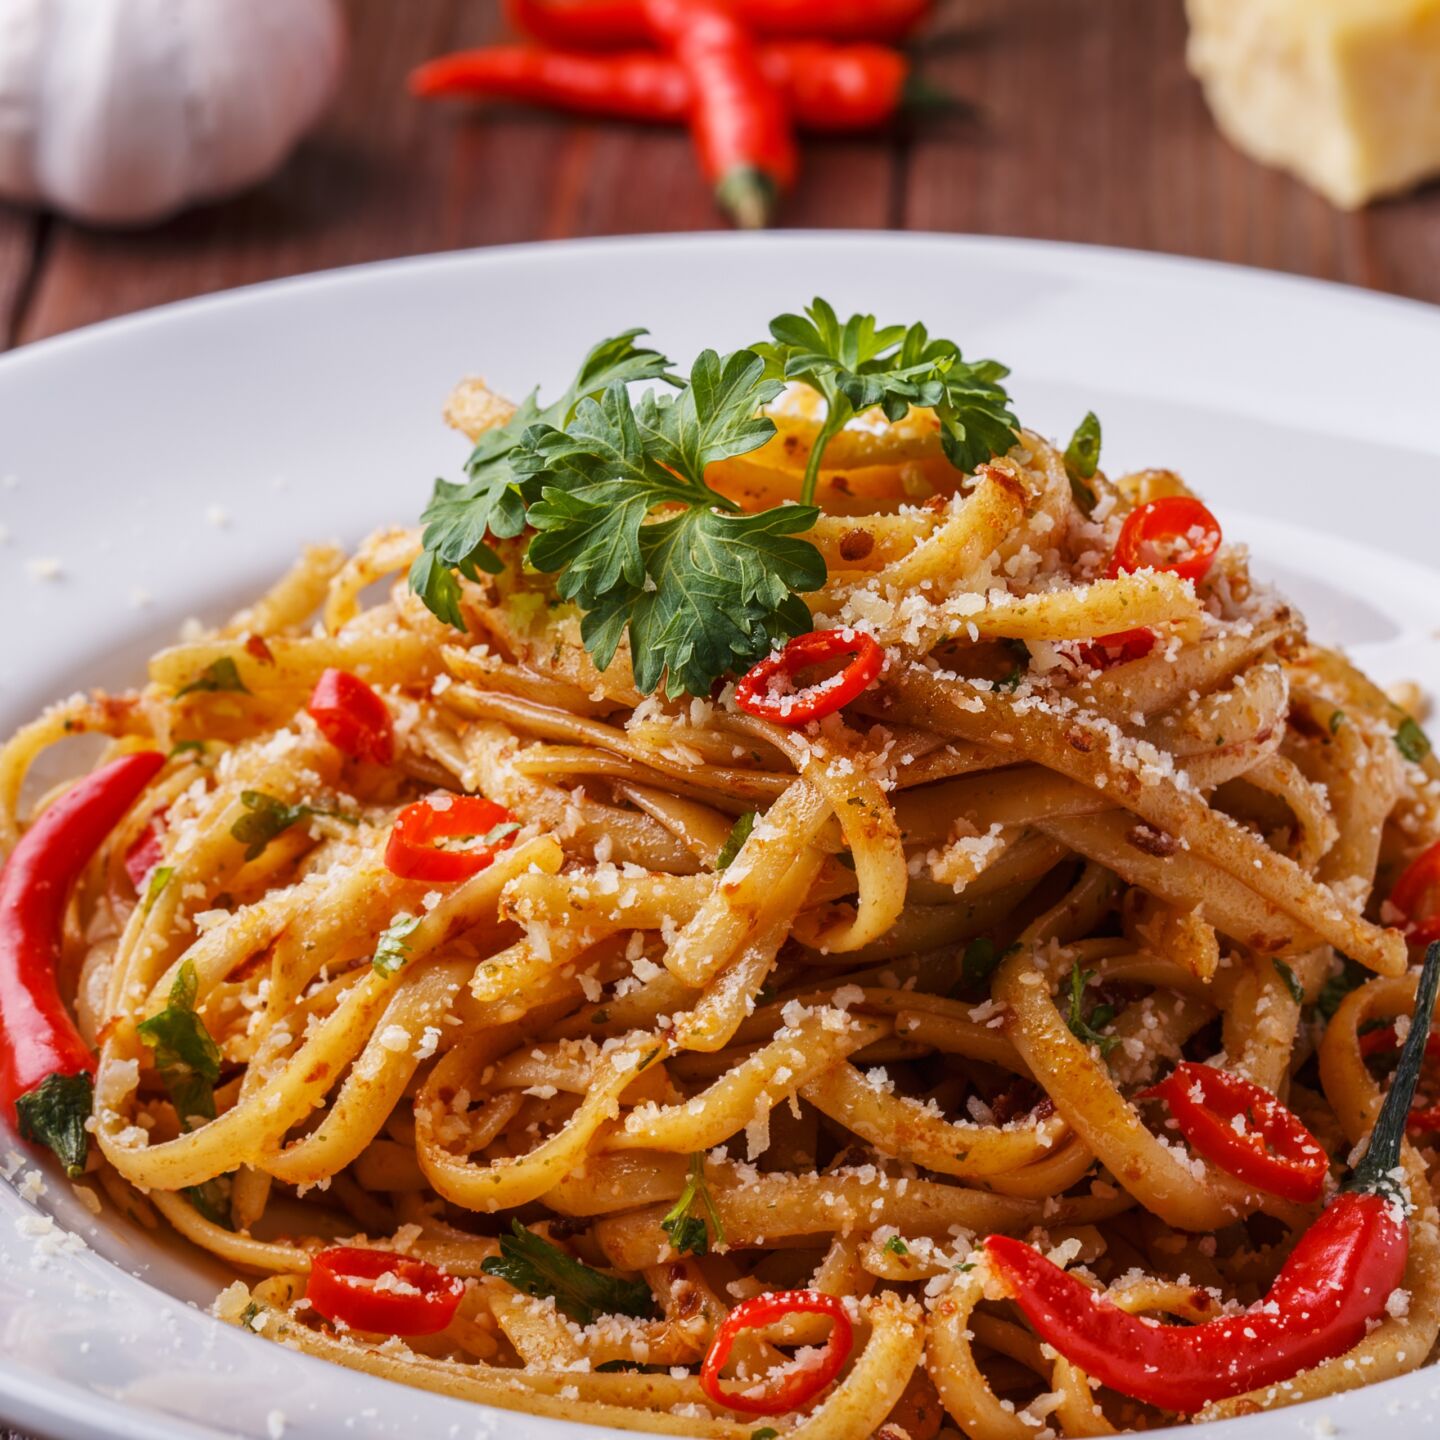 32 different types of pasta - linguine